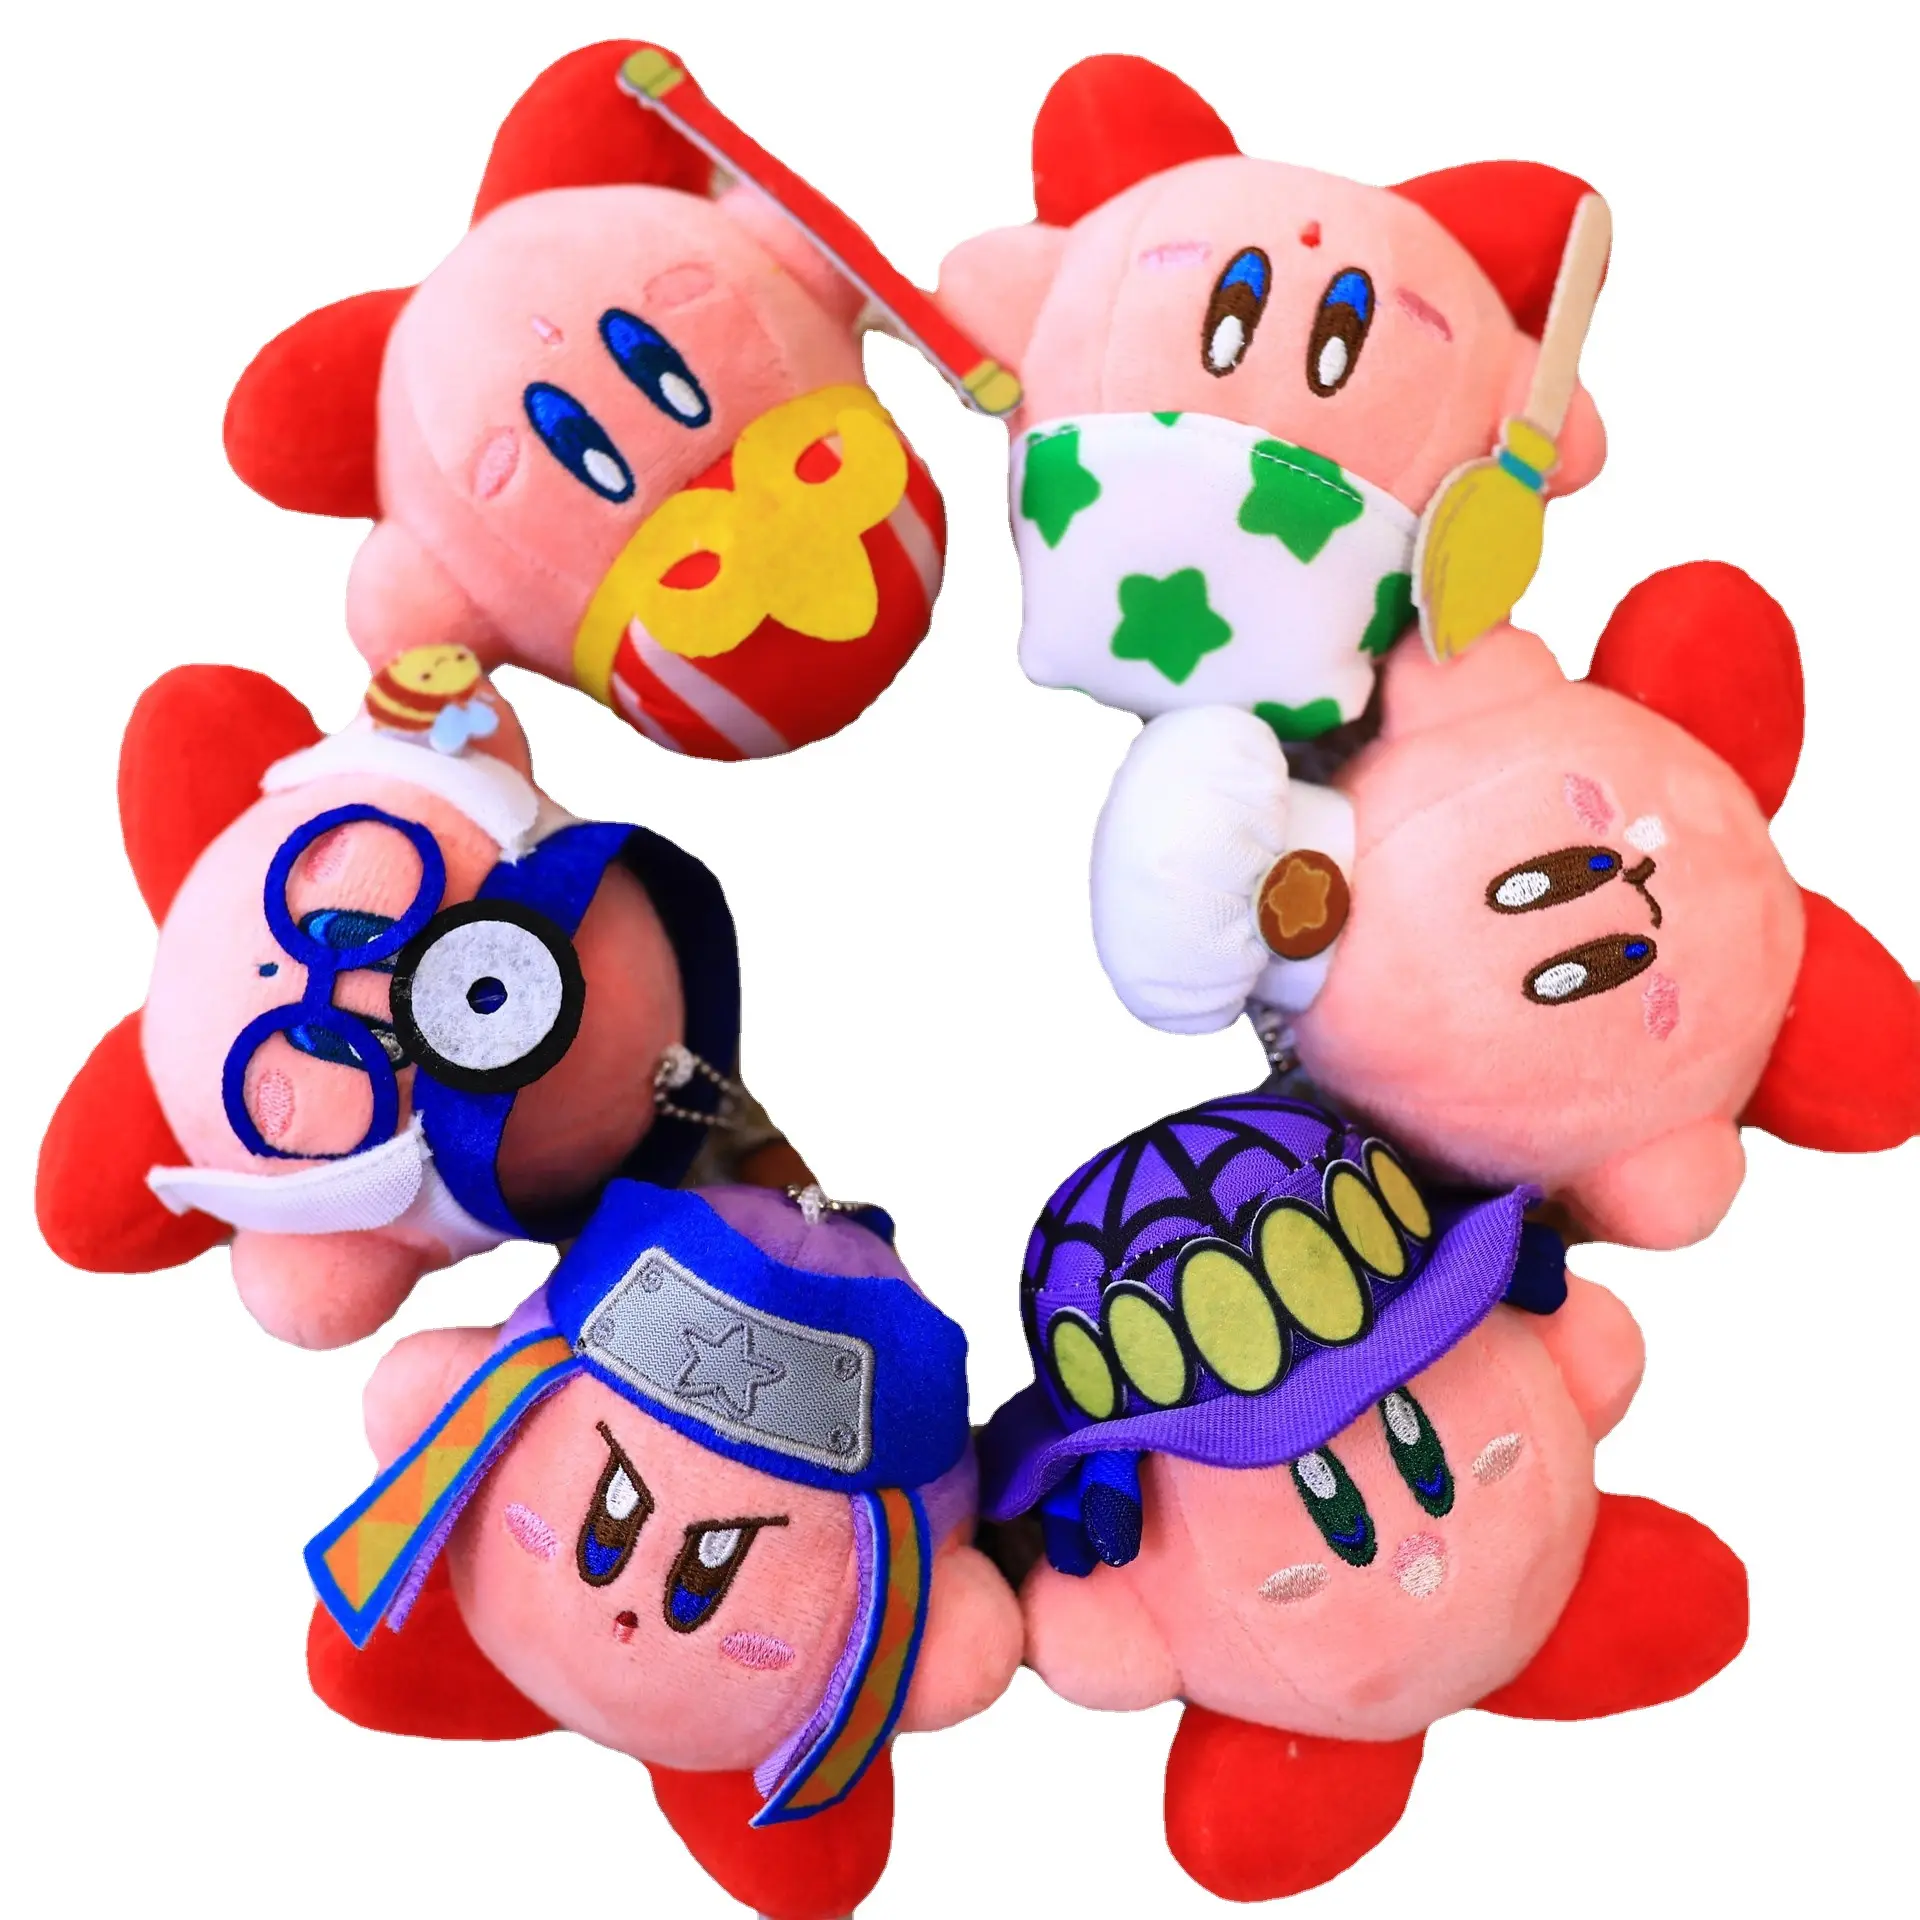 Toptan 10cm japon Kirby peluş oyuncak Anime Kawaii yıldız Kirby çanta kolye anahtarlık sevimli dolması Stuffed che bebek kız süsler